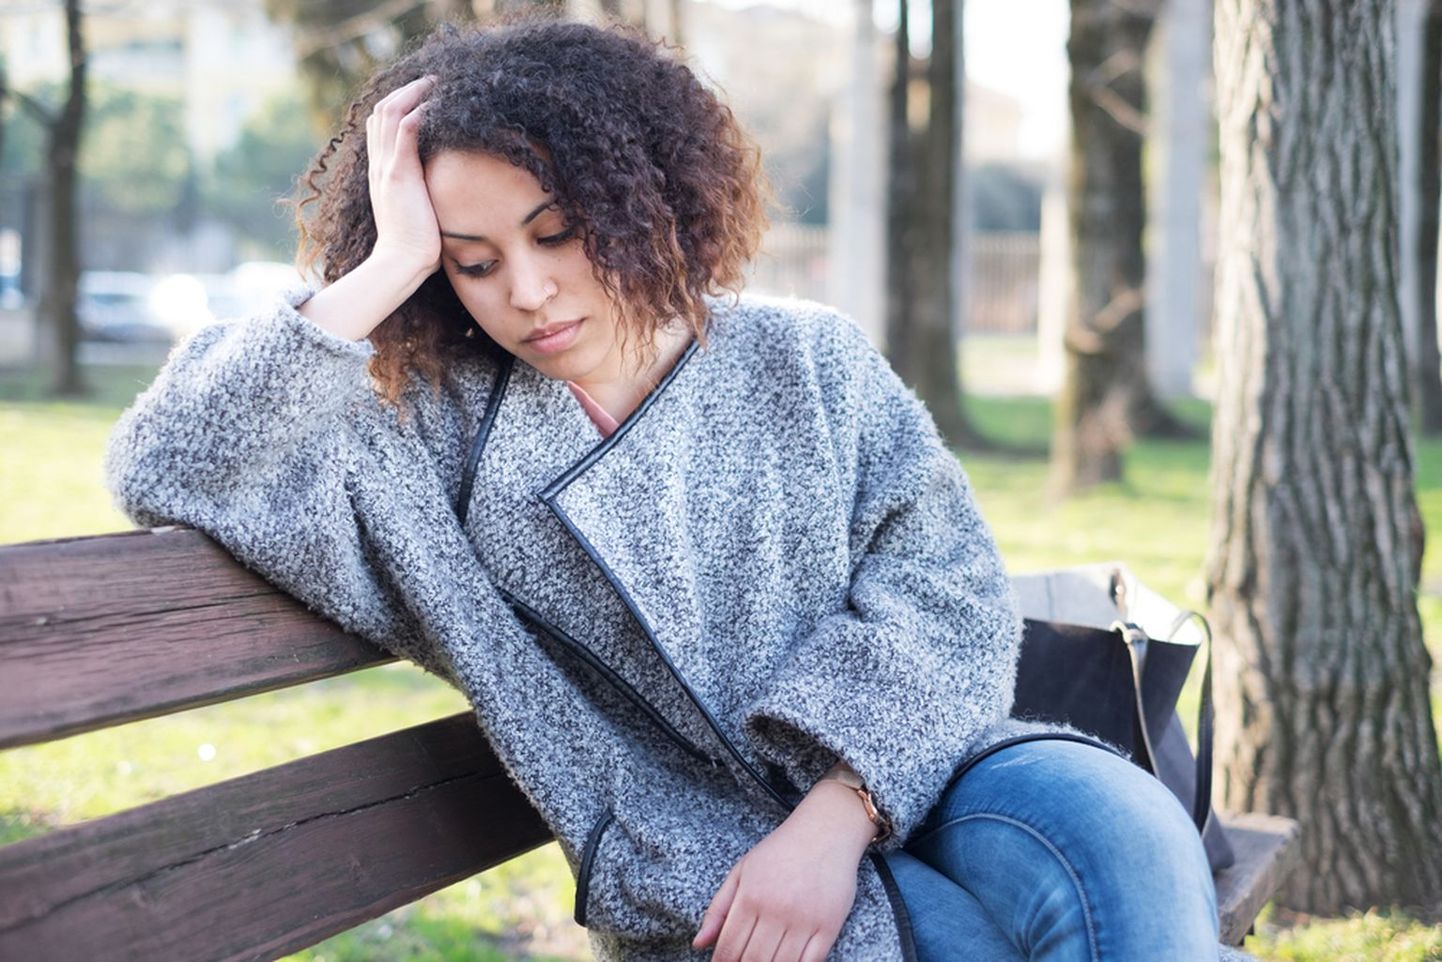 Постоянное чувство усталости может быть сигналом о серьезных проблемах со здоровьем.